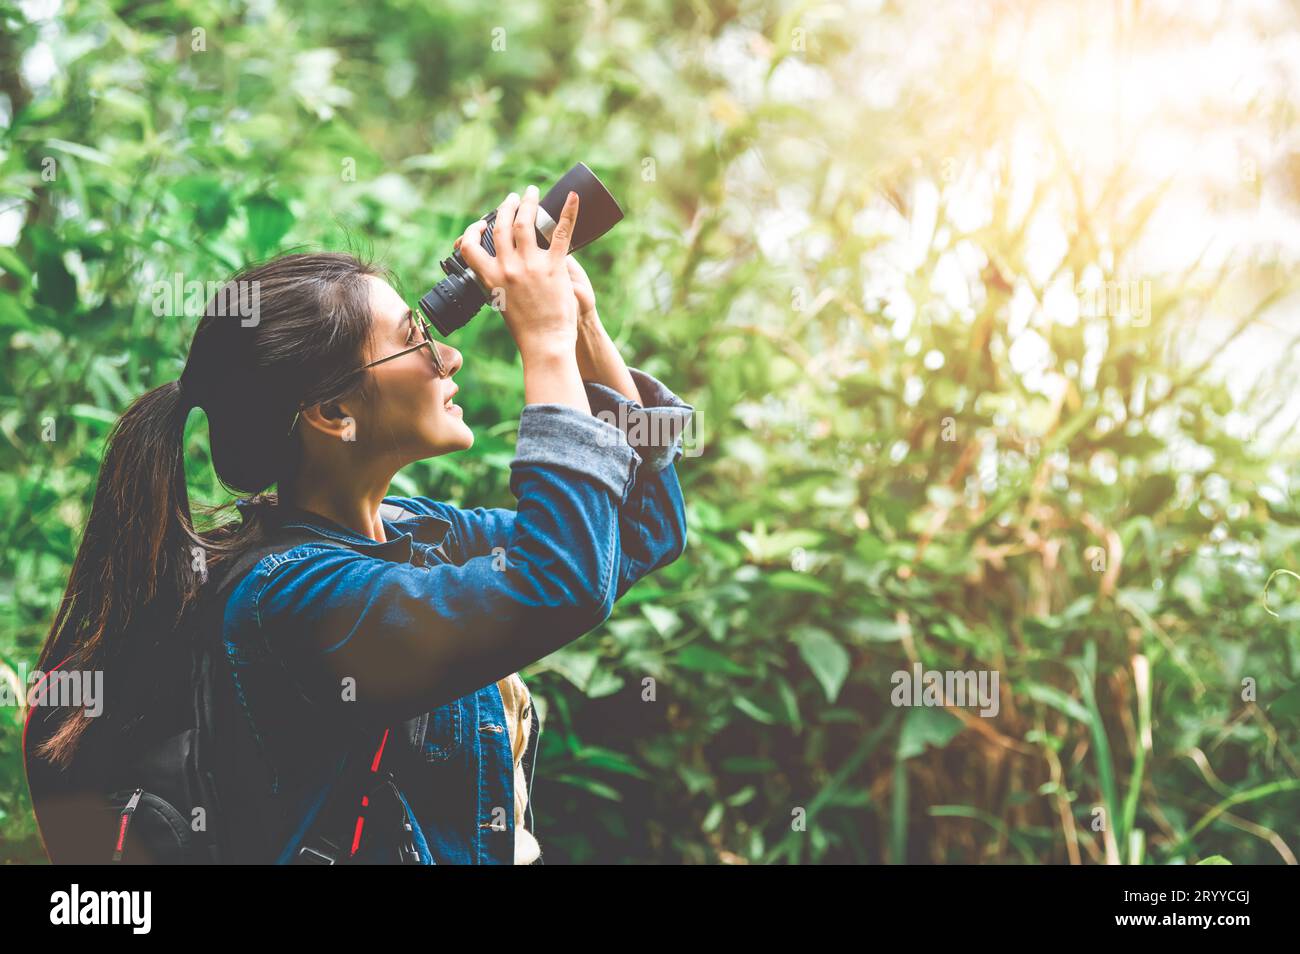 Schöne asiatische Frau mit Fernglas Teleskop in Wald aussehendes Ziel. Lebensstil und Freizeitaktivitäten der Menschen. Natur und Stockfoto